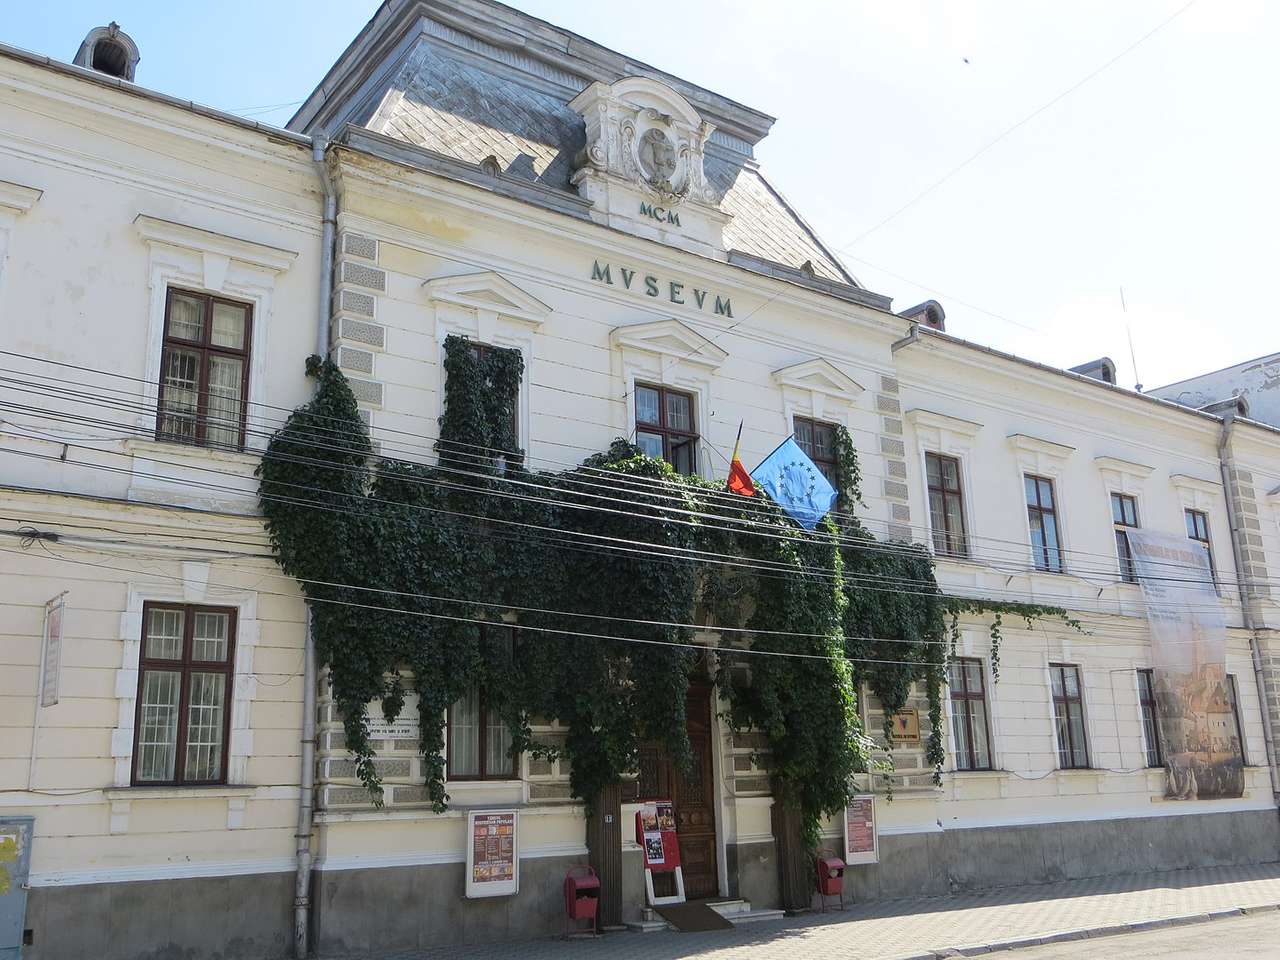 "Muzeum okresu Suceava" skládačky online